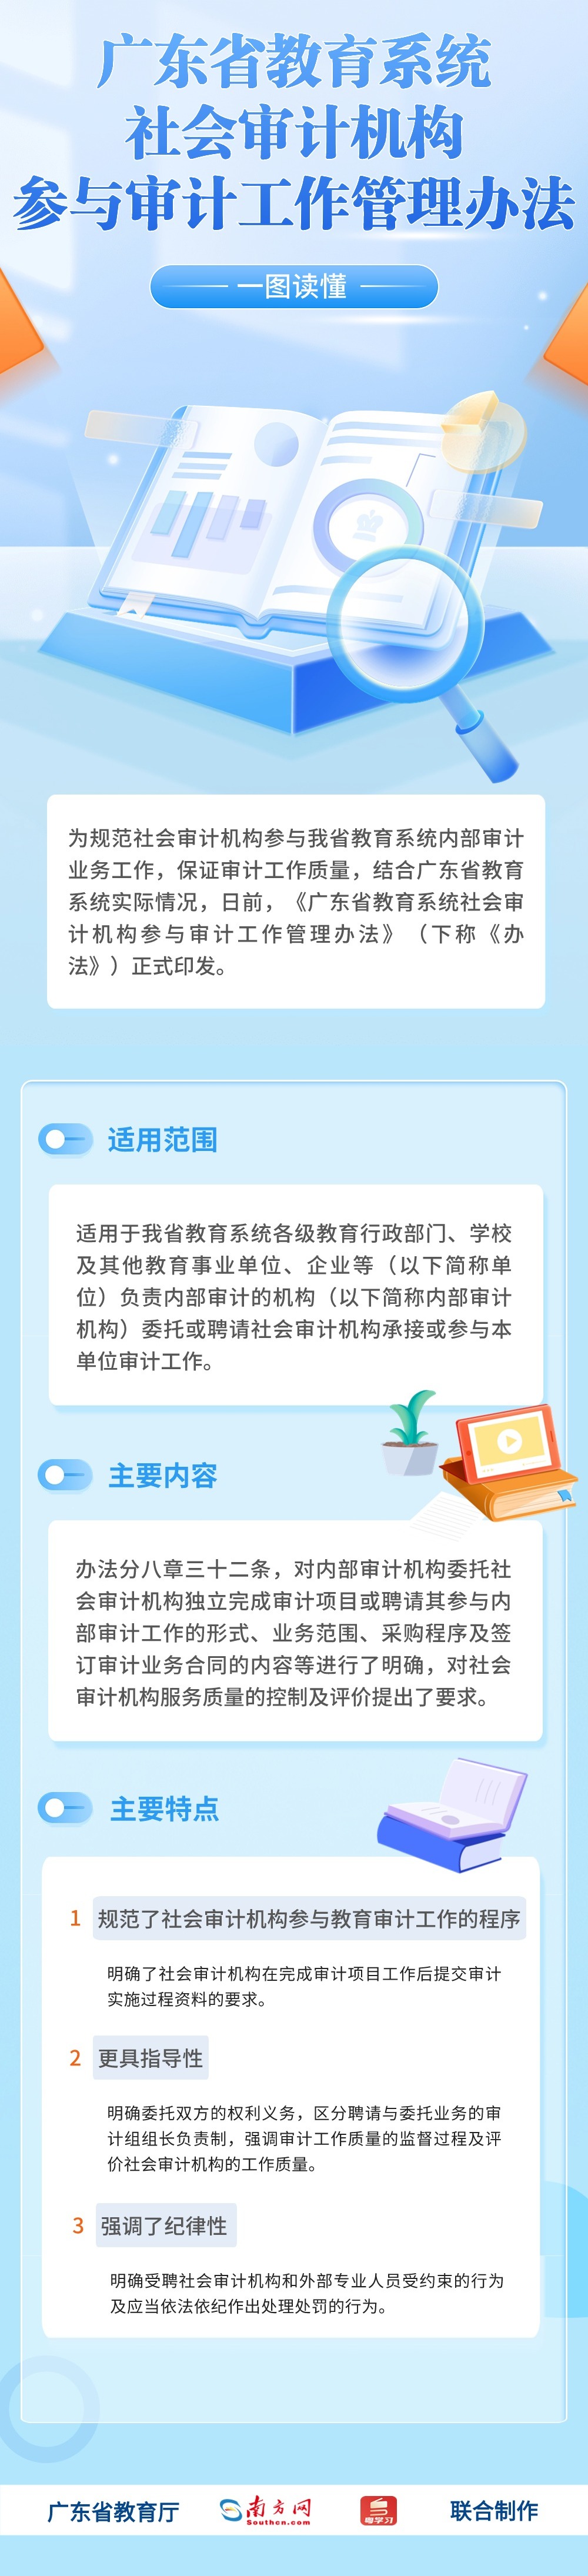 广东省教育系统社会审计机构参与审计工作管理办法.jpg